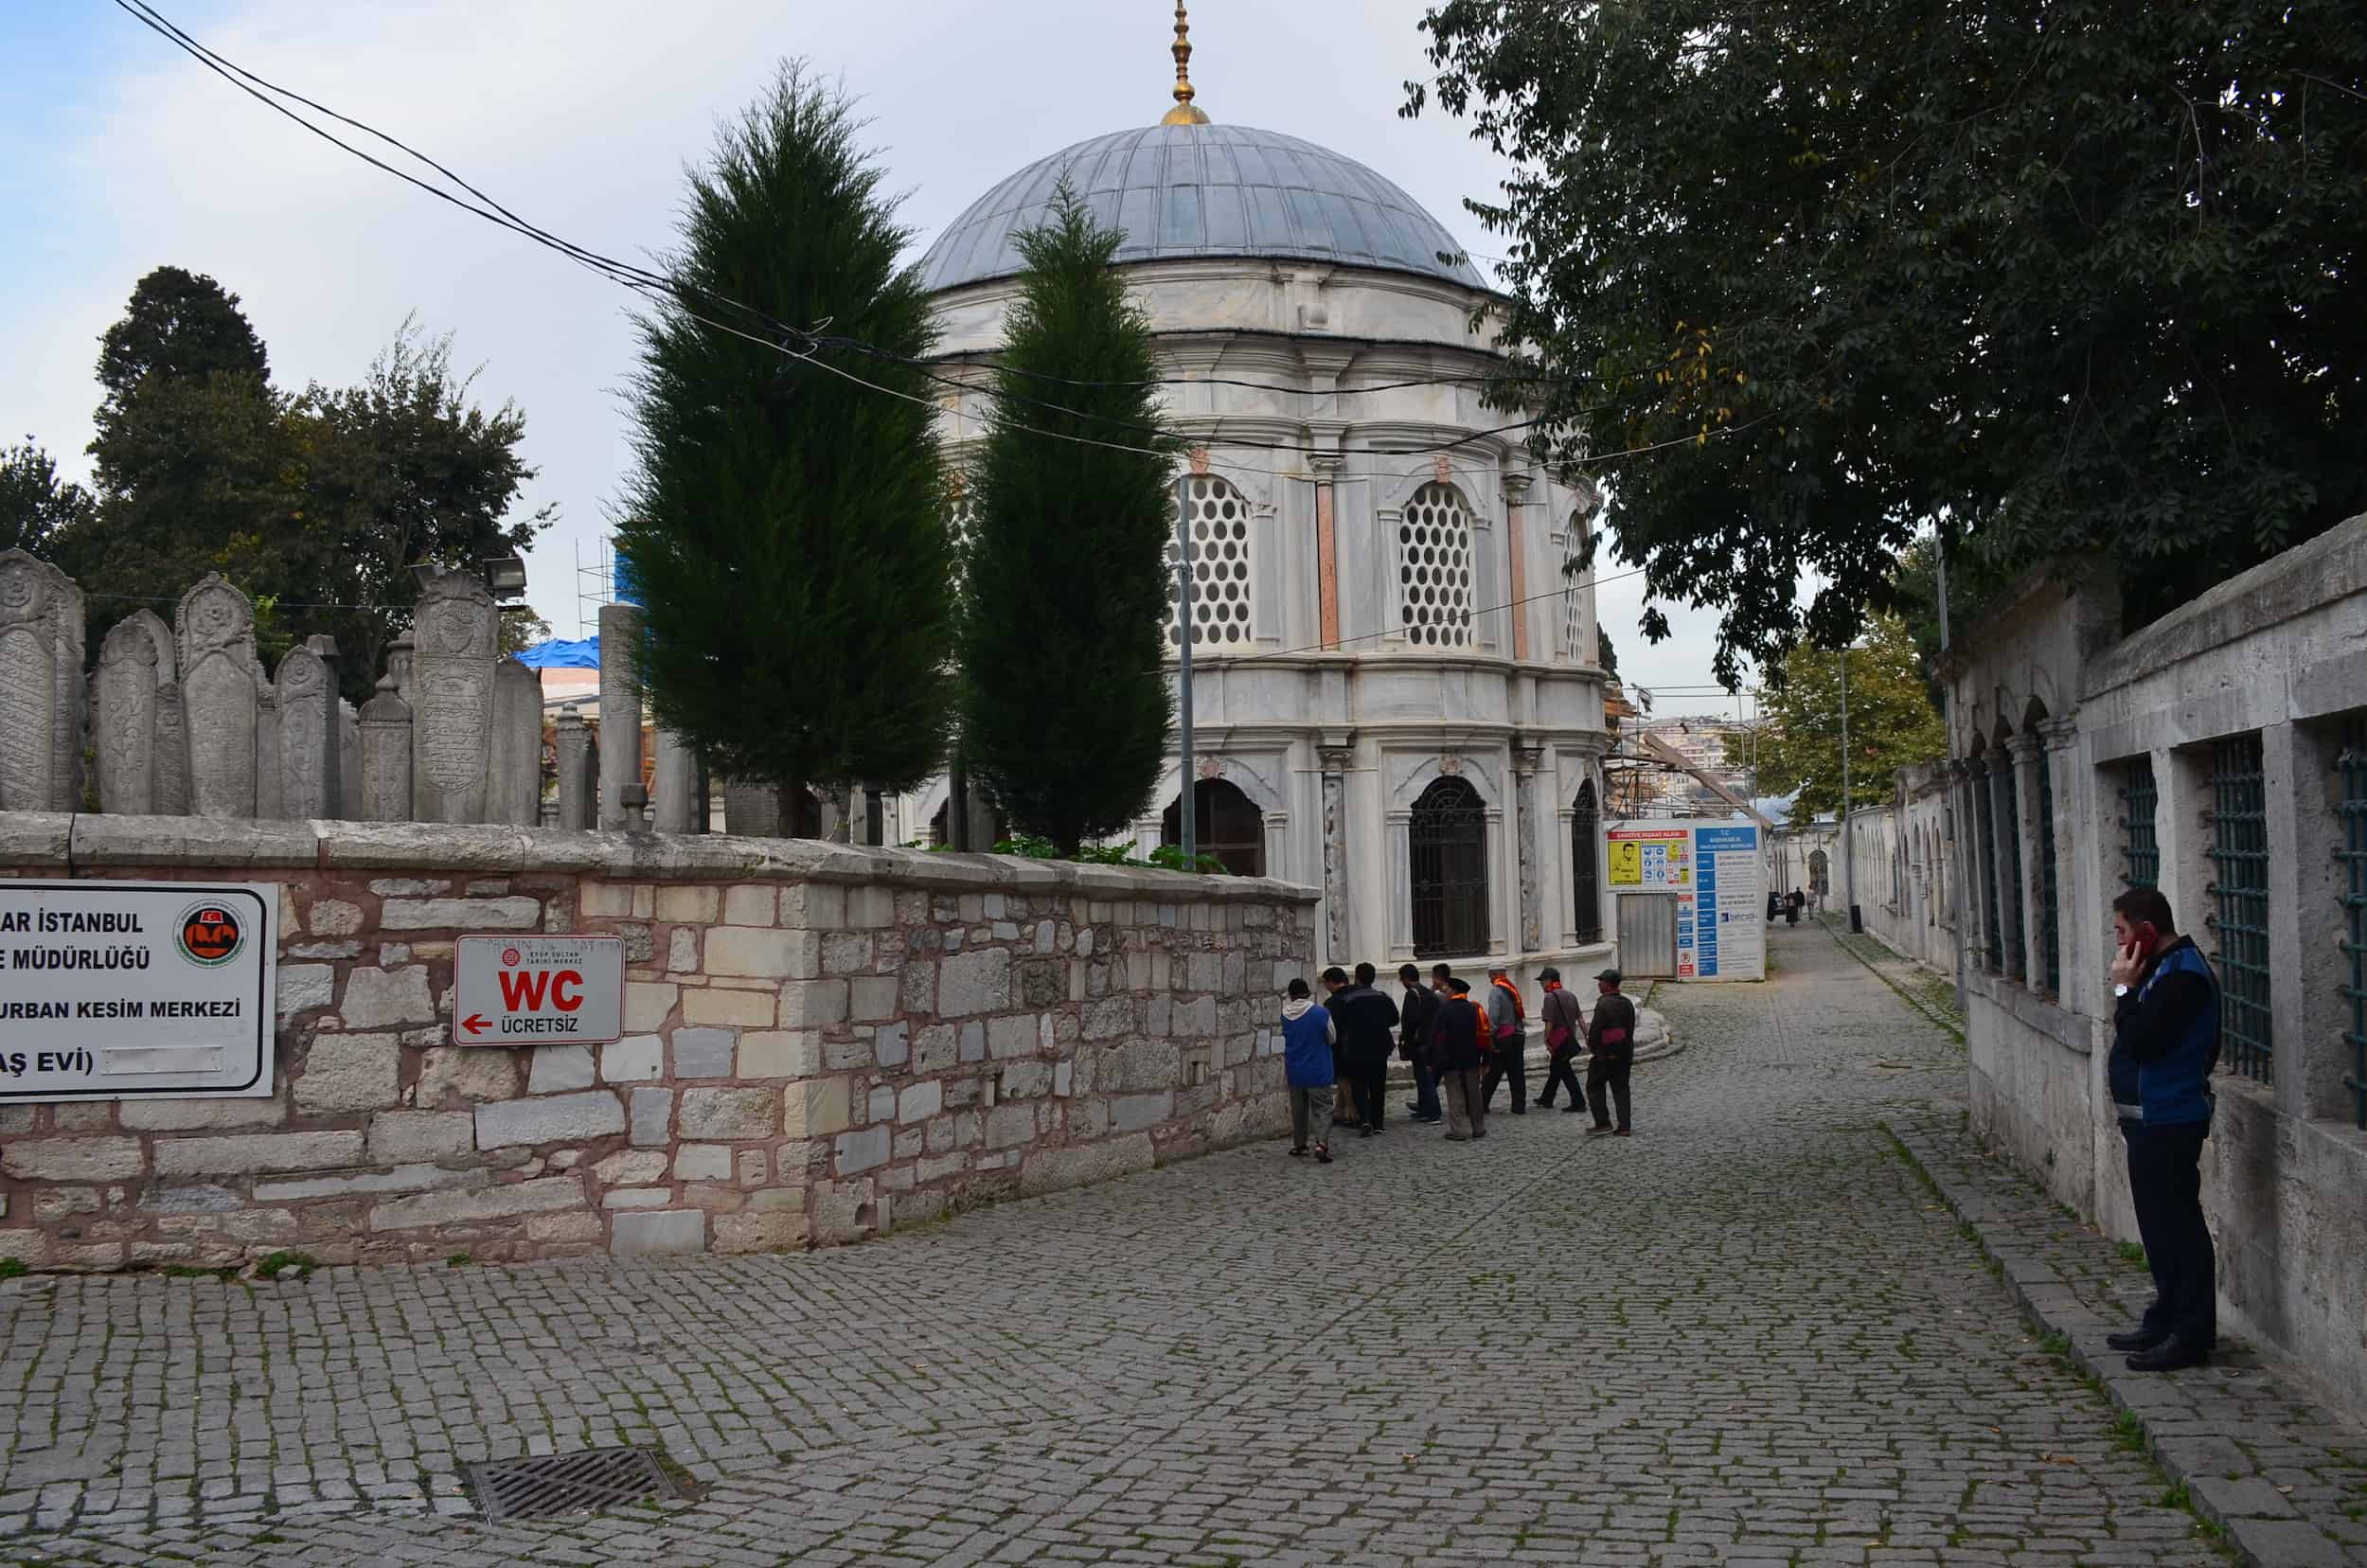 Cülus Yolu in Eyüp, Istanbul, Turkey